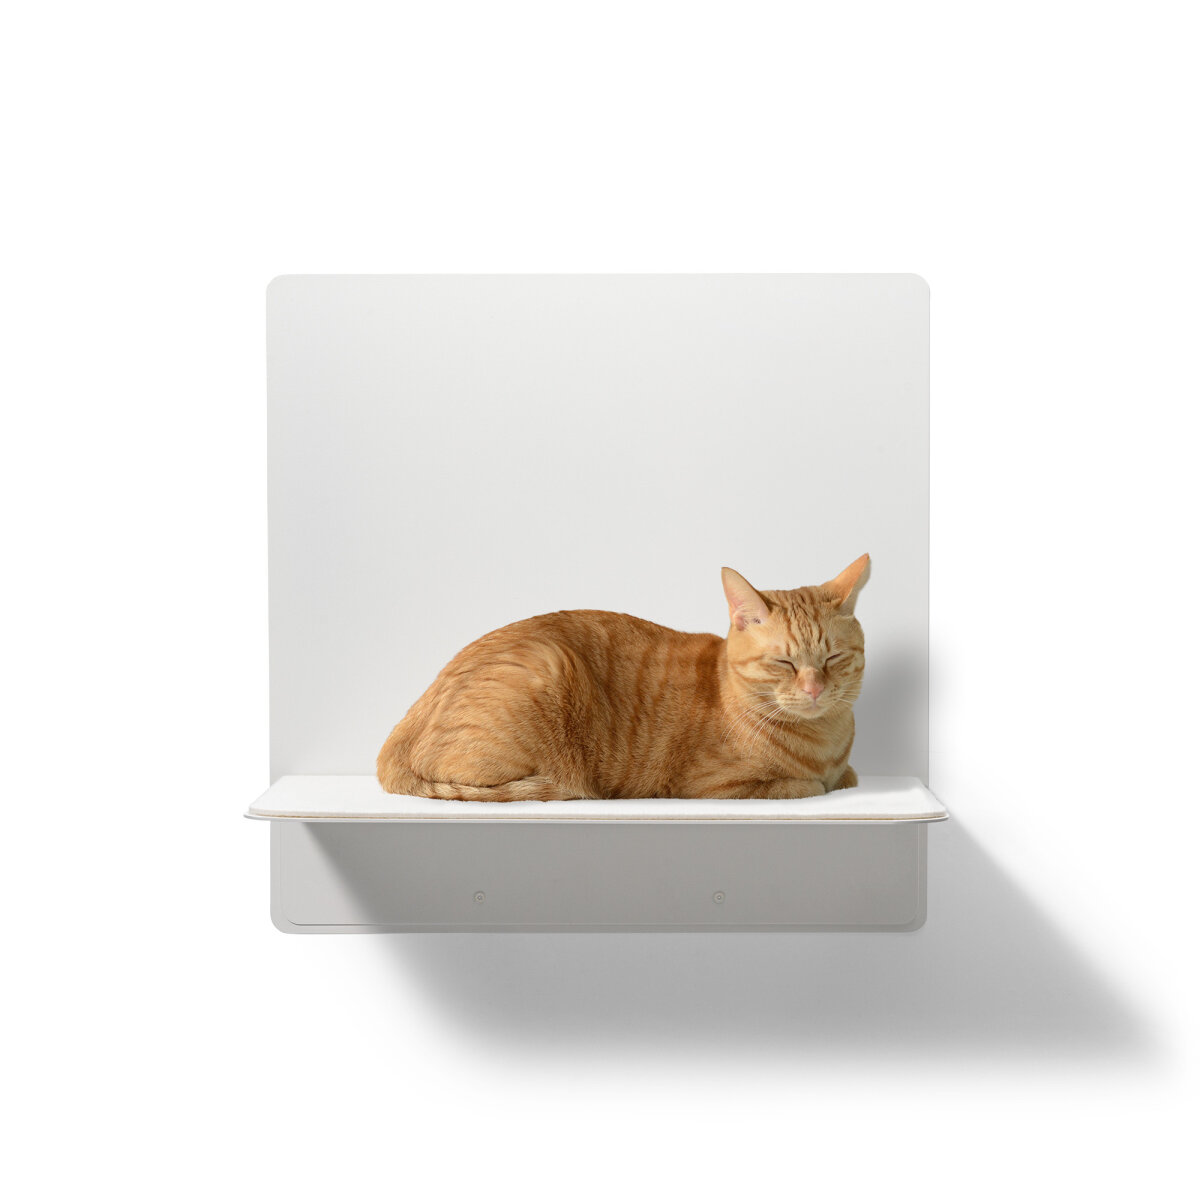 STYA Katzen Wandliege WL 320 | Design Wandmöbel Katzenkletterwand aus Metall - Katzengerecht, modern und minimalistisch, Premium Qualität